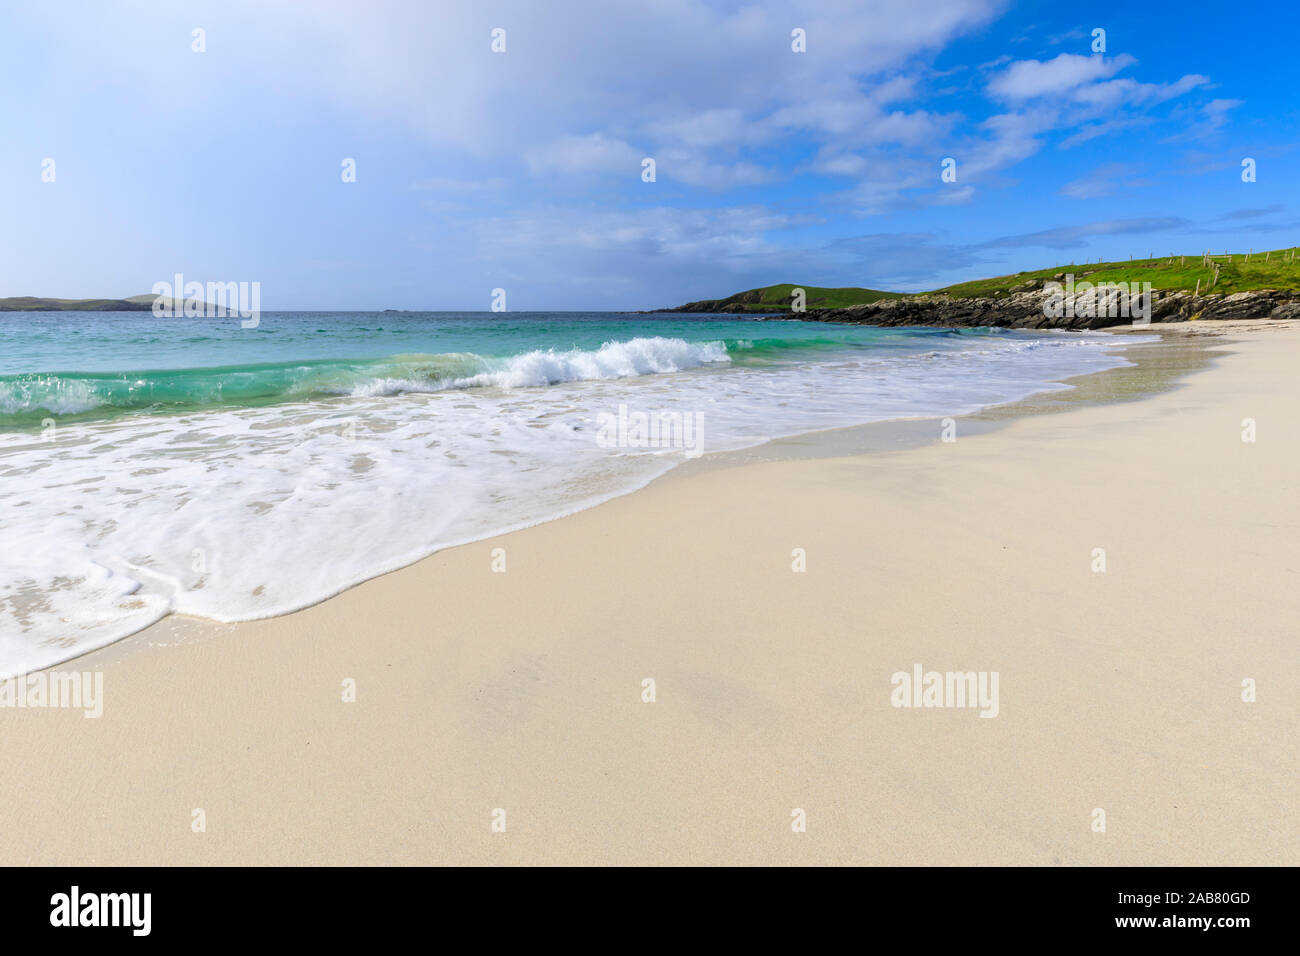 Comida, playa de arena blanca, agua turquesa, uno de los mejores de Shetland, Isla de West Burra, Islas Shetland, Escocia, Reino Unido, Europa Foto de stock